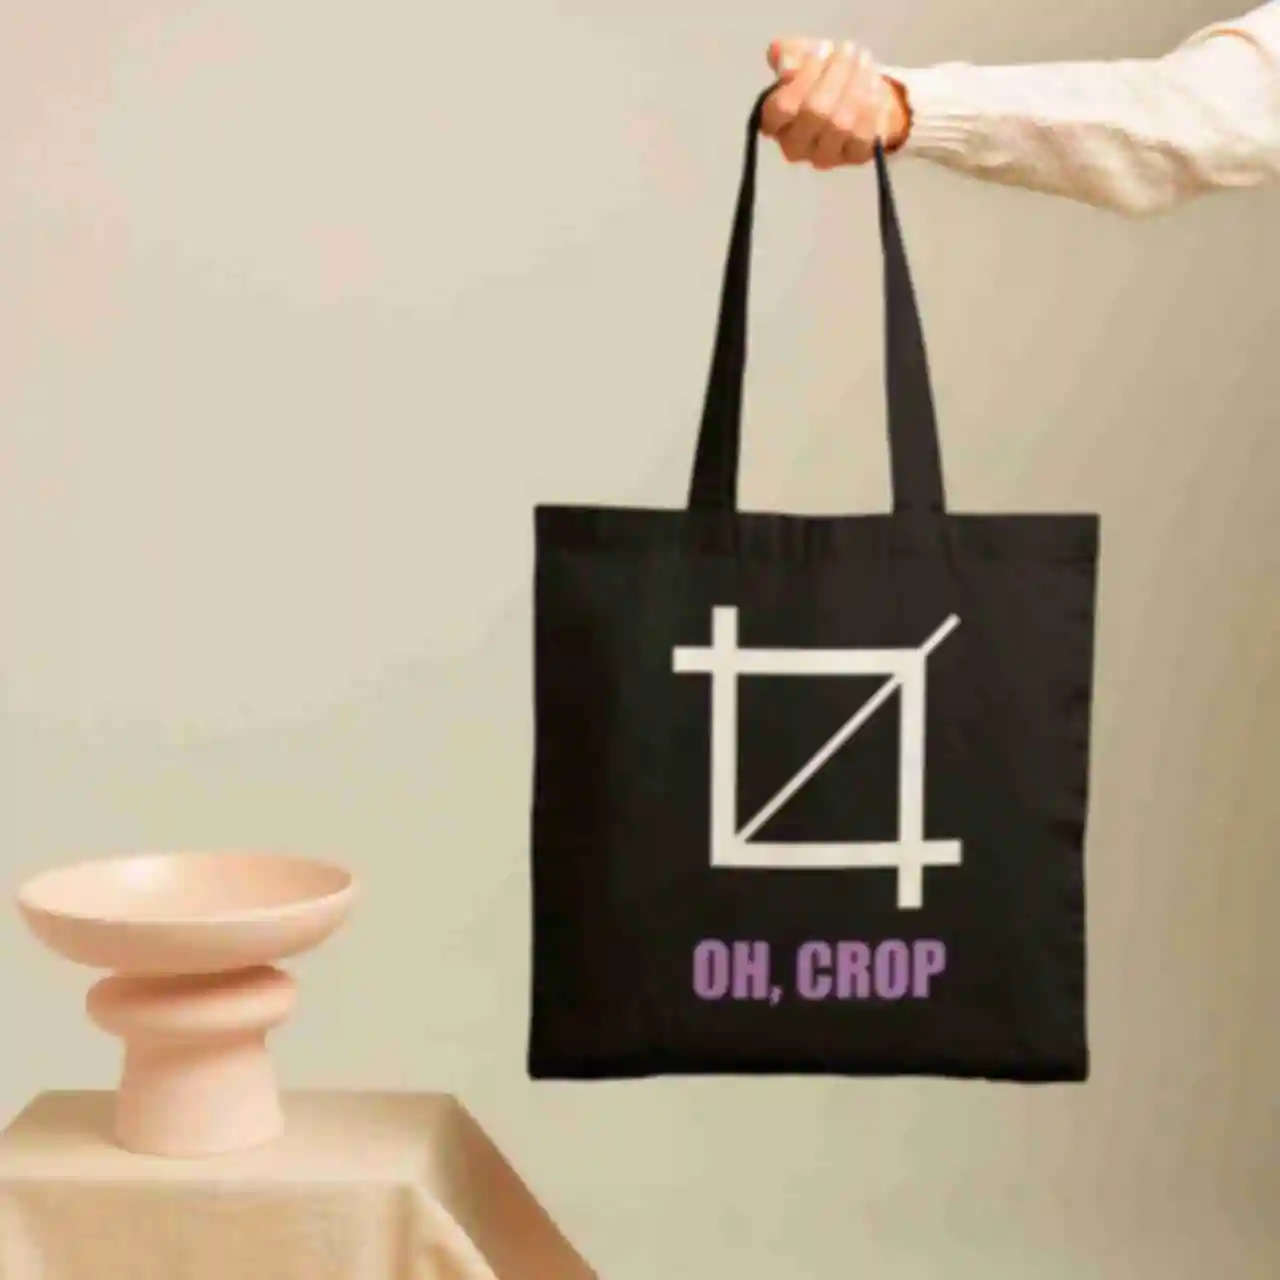 Шопер №7 • OH Crop • Мерч для ілюстратора або дизайнера • Стильна дизайнерська еко-сумка